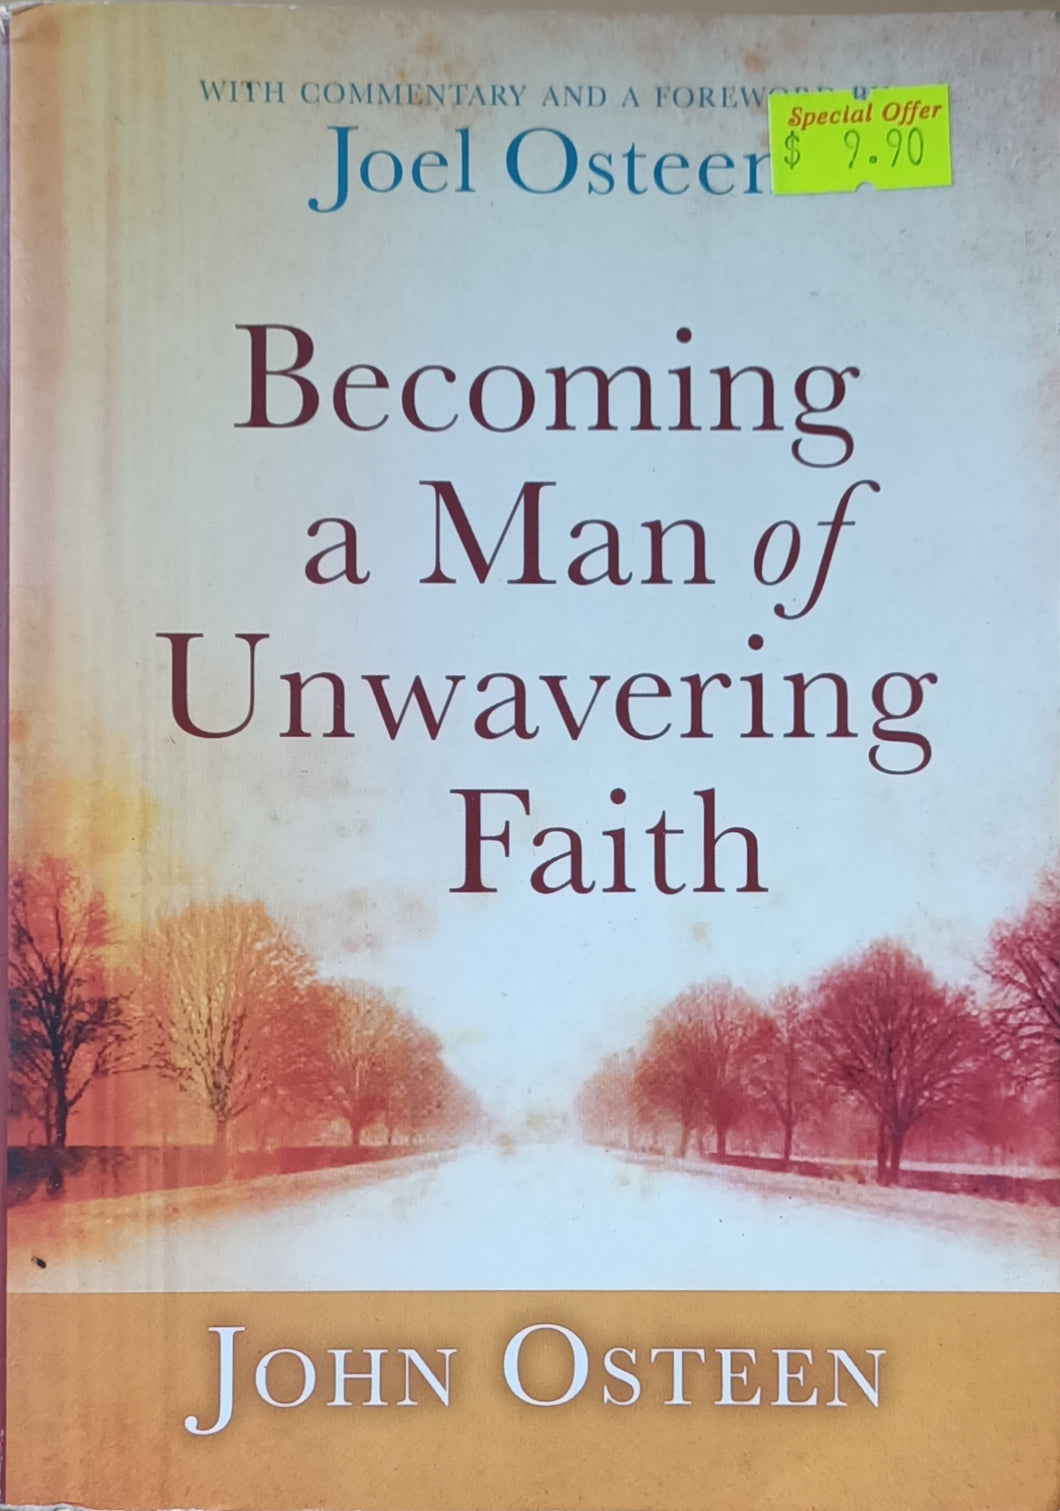 Becoming a Man of Unwavering Faith - Joel Osteen